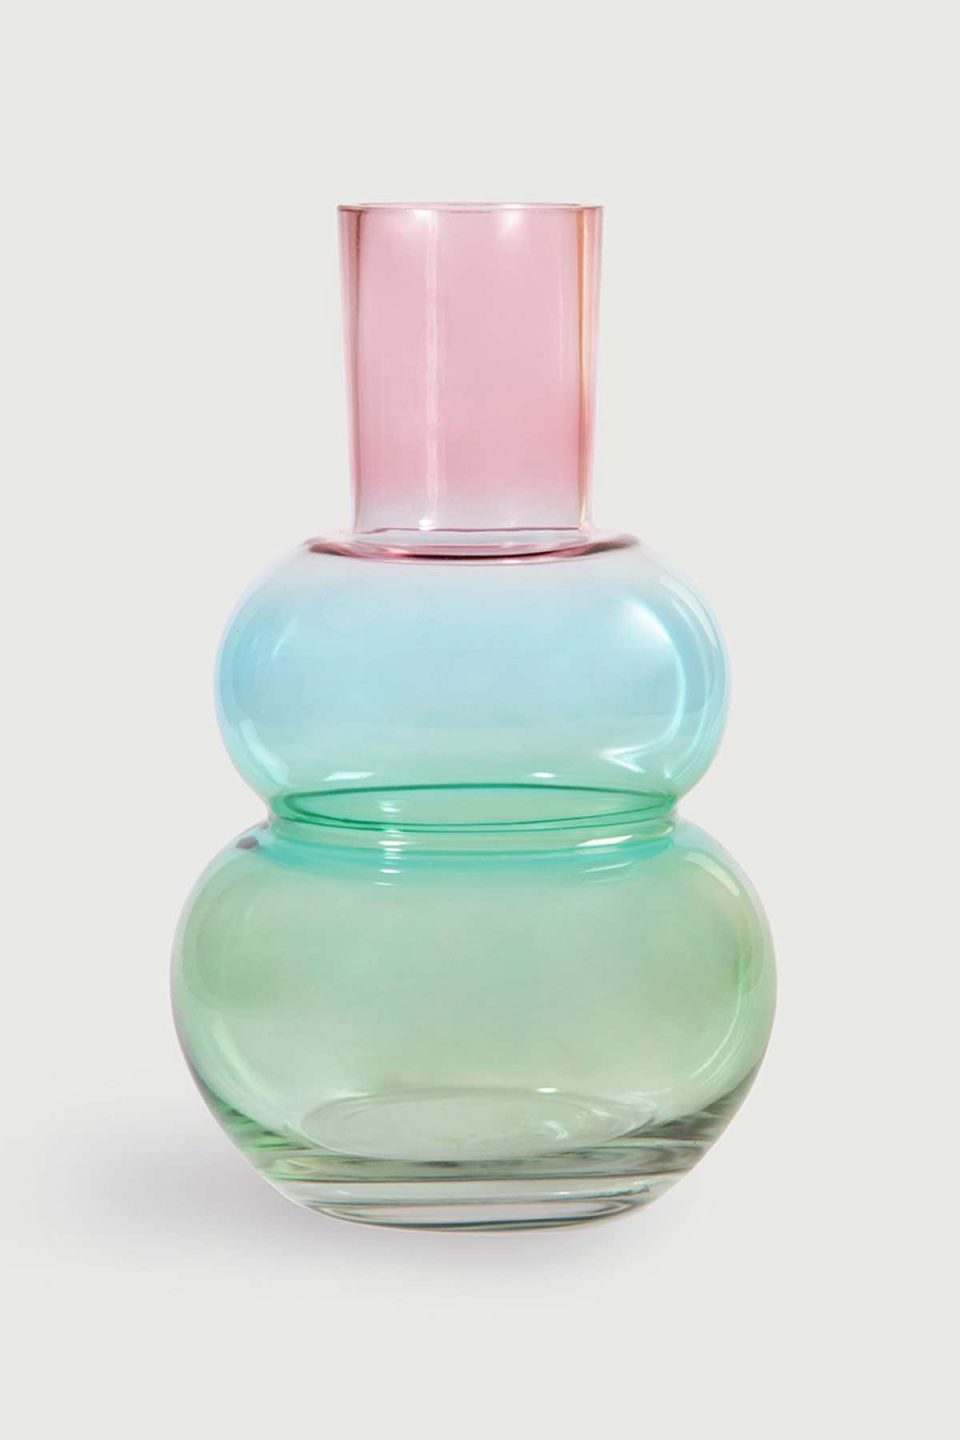 Na slici je prikazana staklena vaza u bojama koje se prelijevaju od zelene na dnu preko plave u sredini do ružičaste na vrhu. Vaza je trbušasta na dnu, ima zadebljanje u sredini, a vrh je stožast.